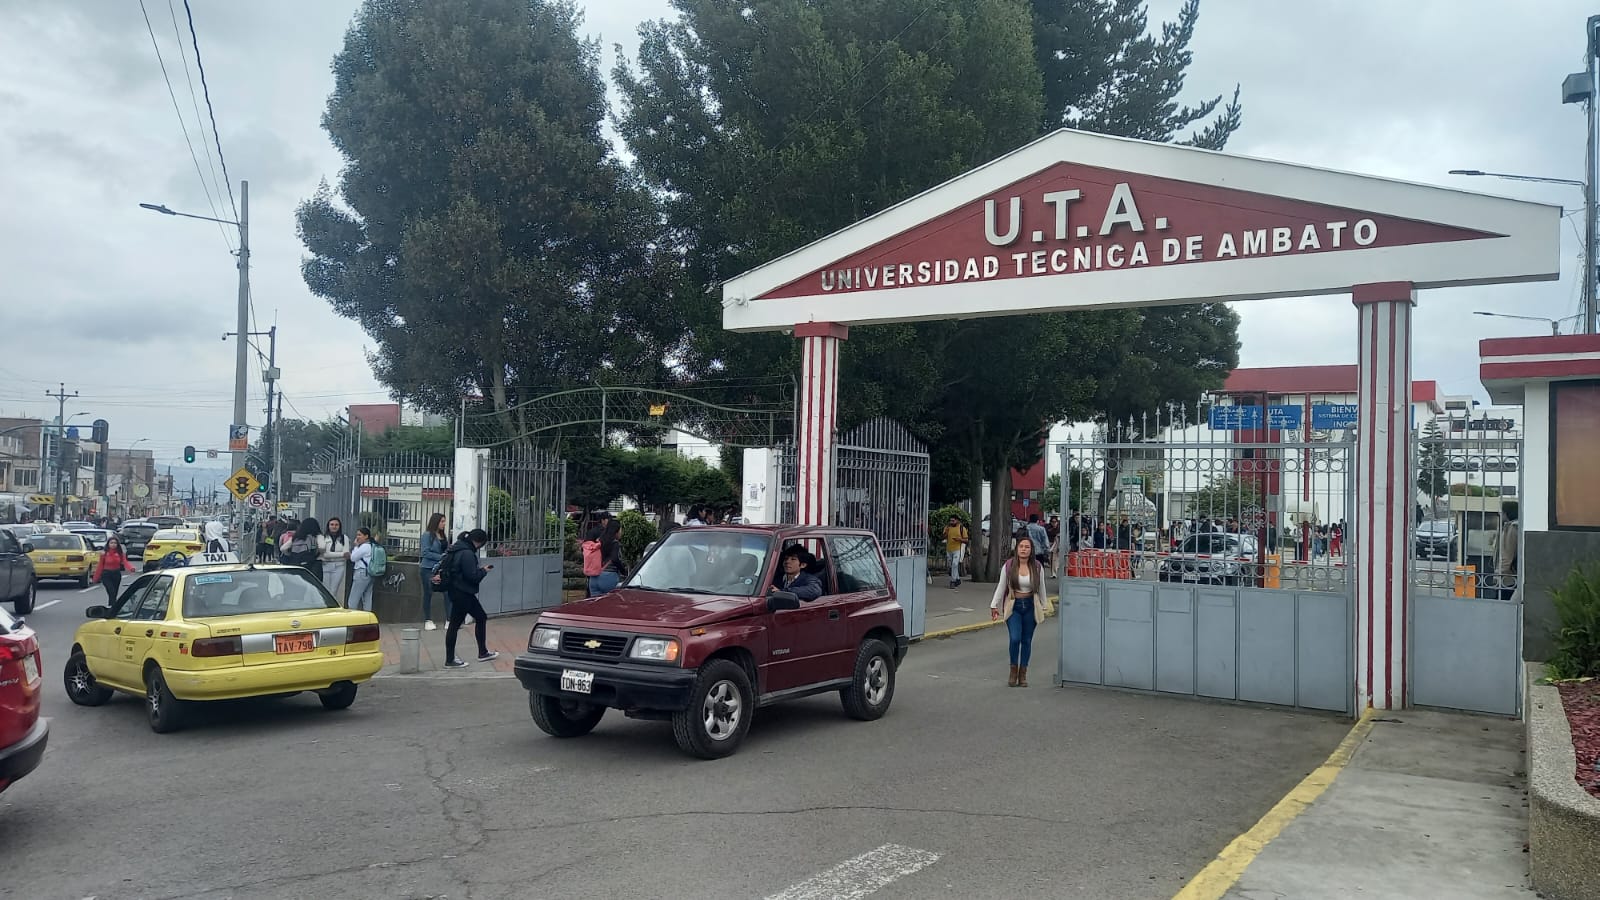 La UTA tiene tres campus en Huachi, Ingahurco y Querochaca.